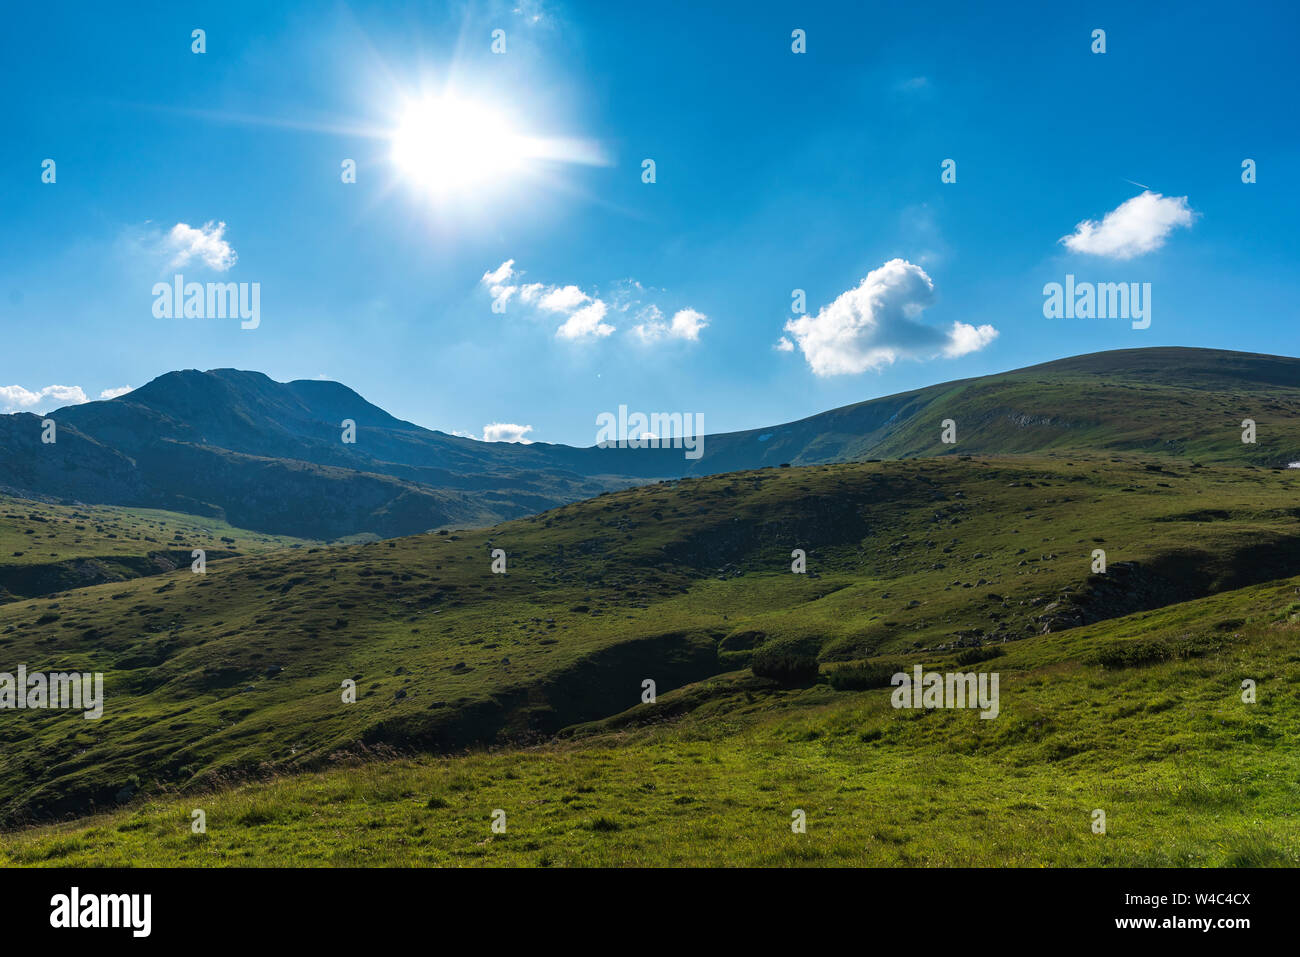 Très belle vue panoramique sur la montagne de Rila, Bulgarie Banque D'Images